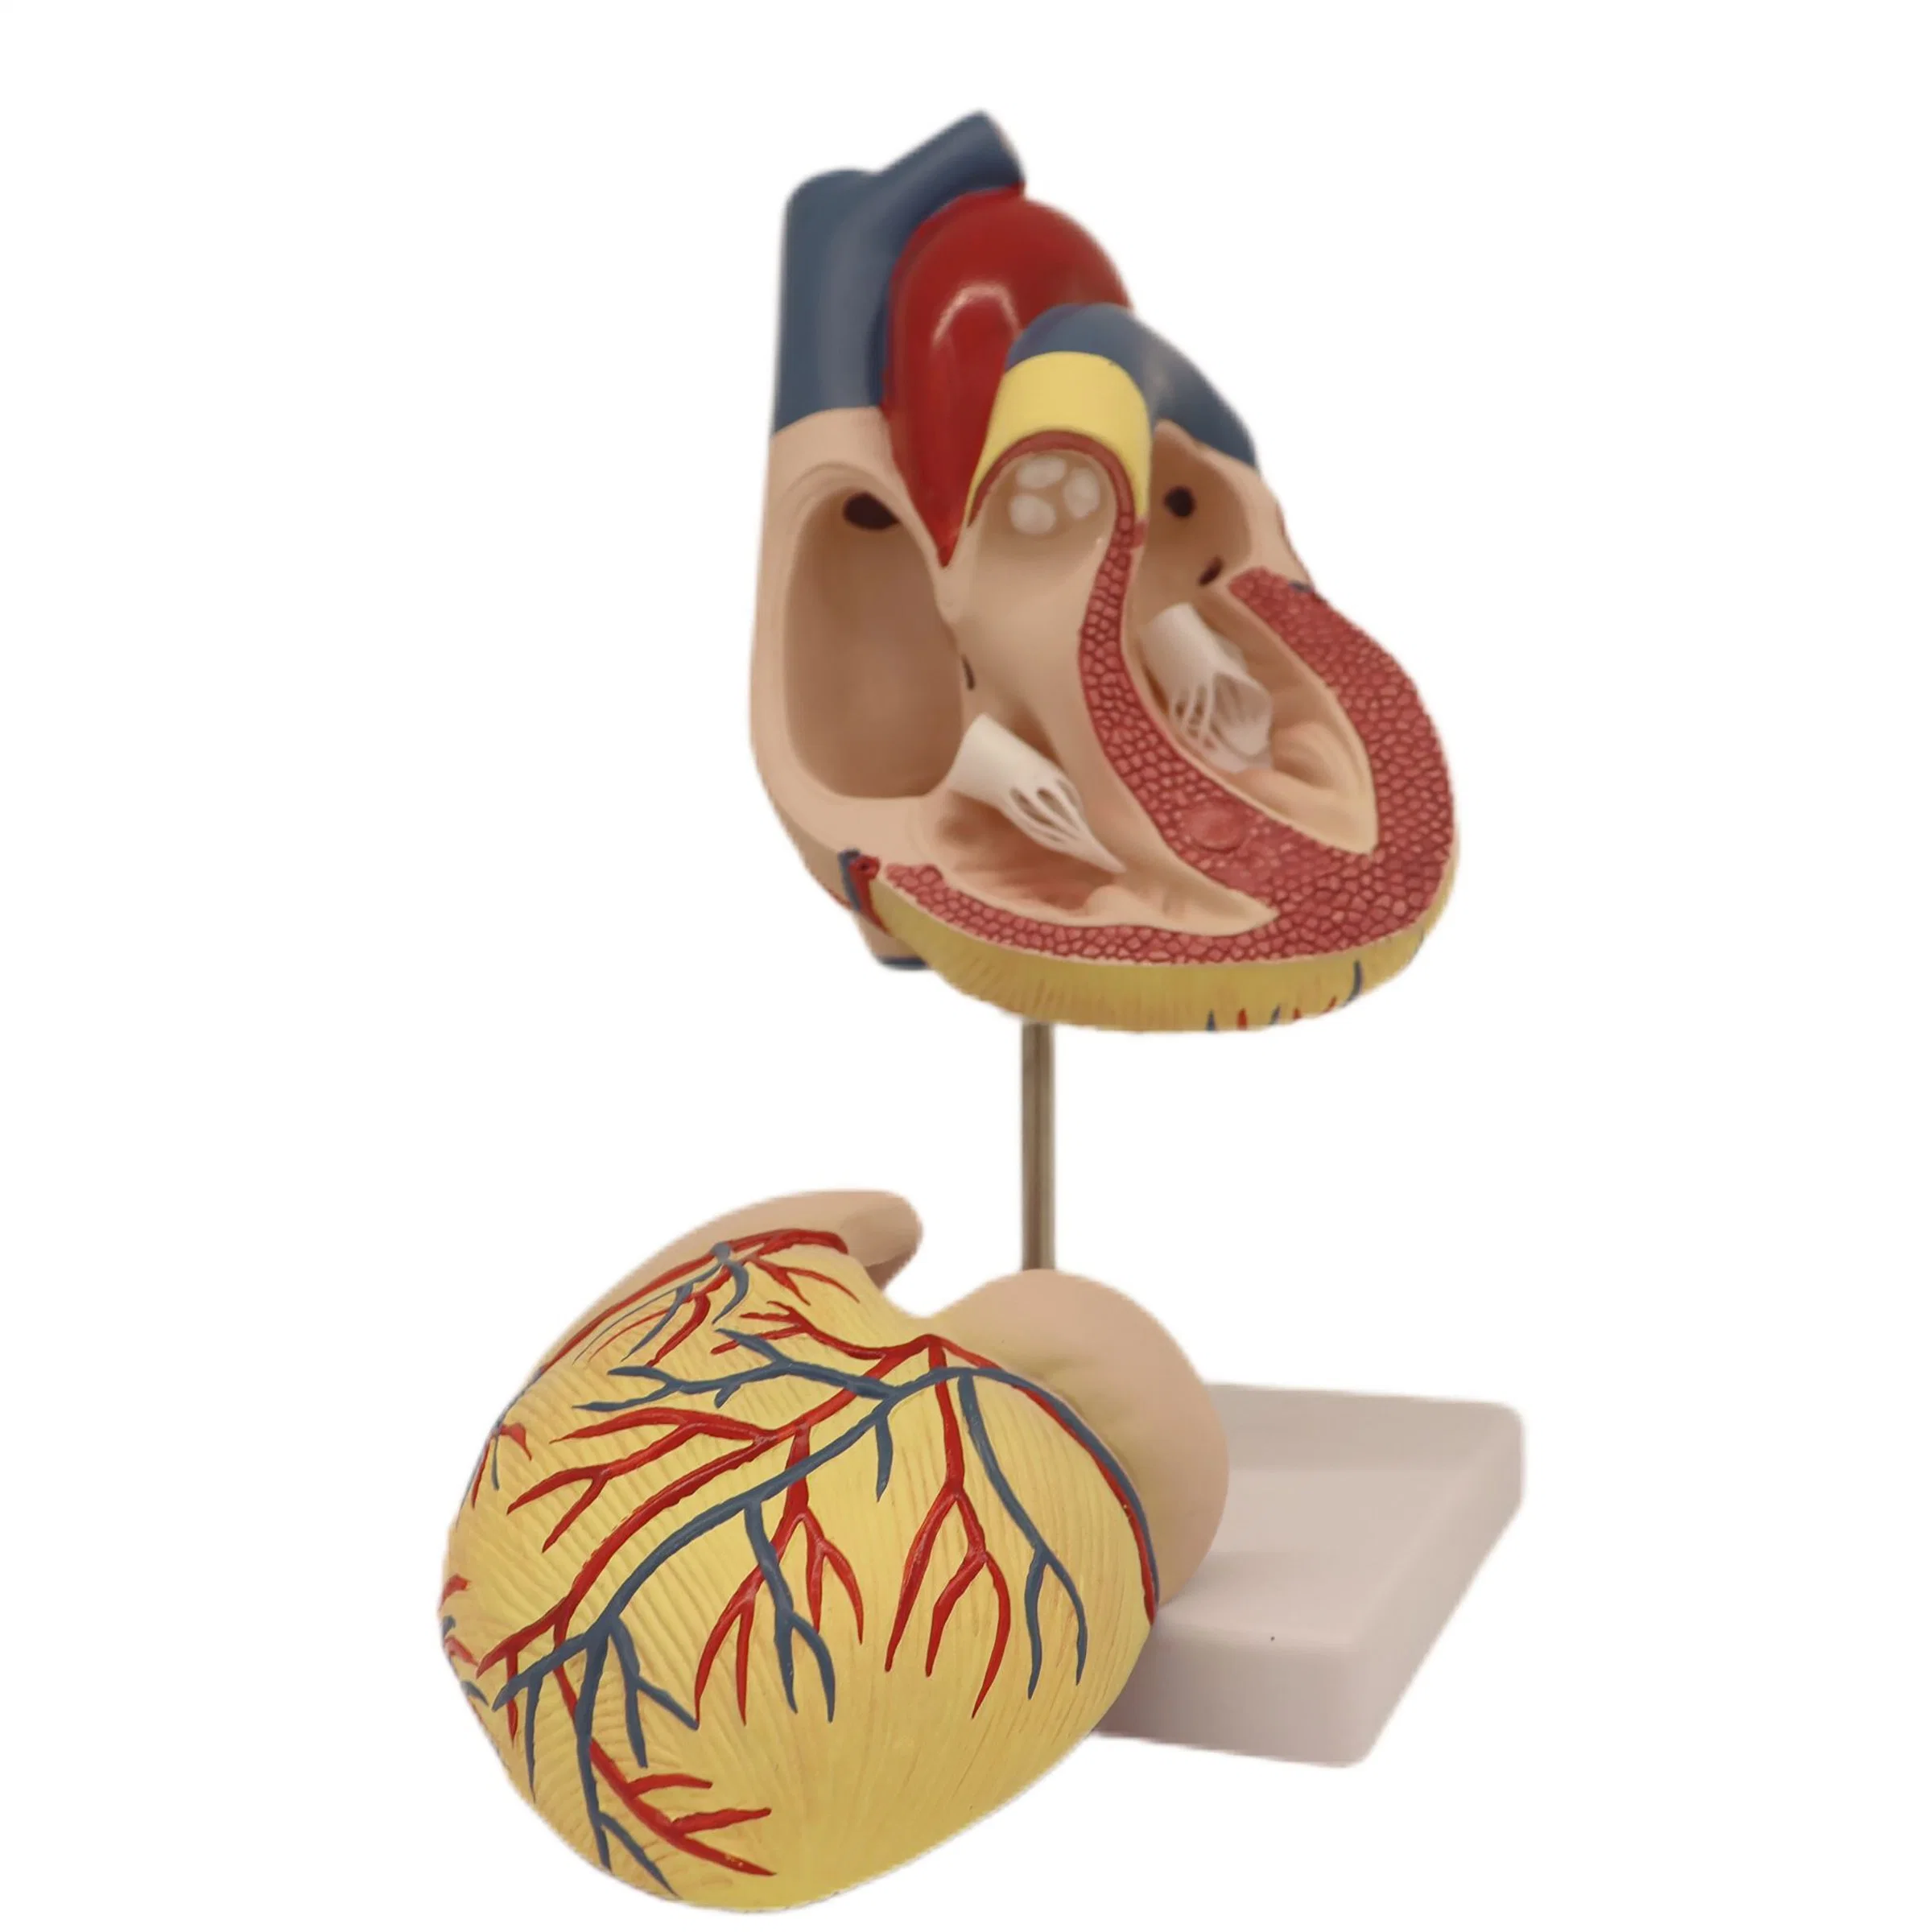 Хорошее качество Классическая скидка Цена ЖЭ Хумамам Анатомическая модель Раздела «Отсечение сердца»